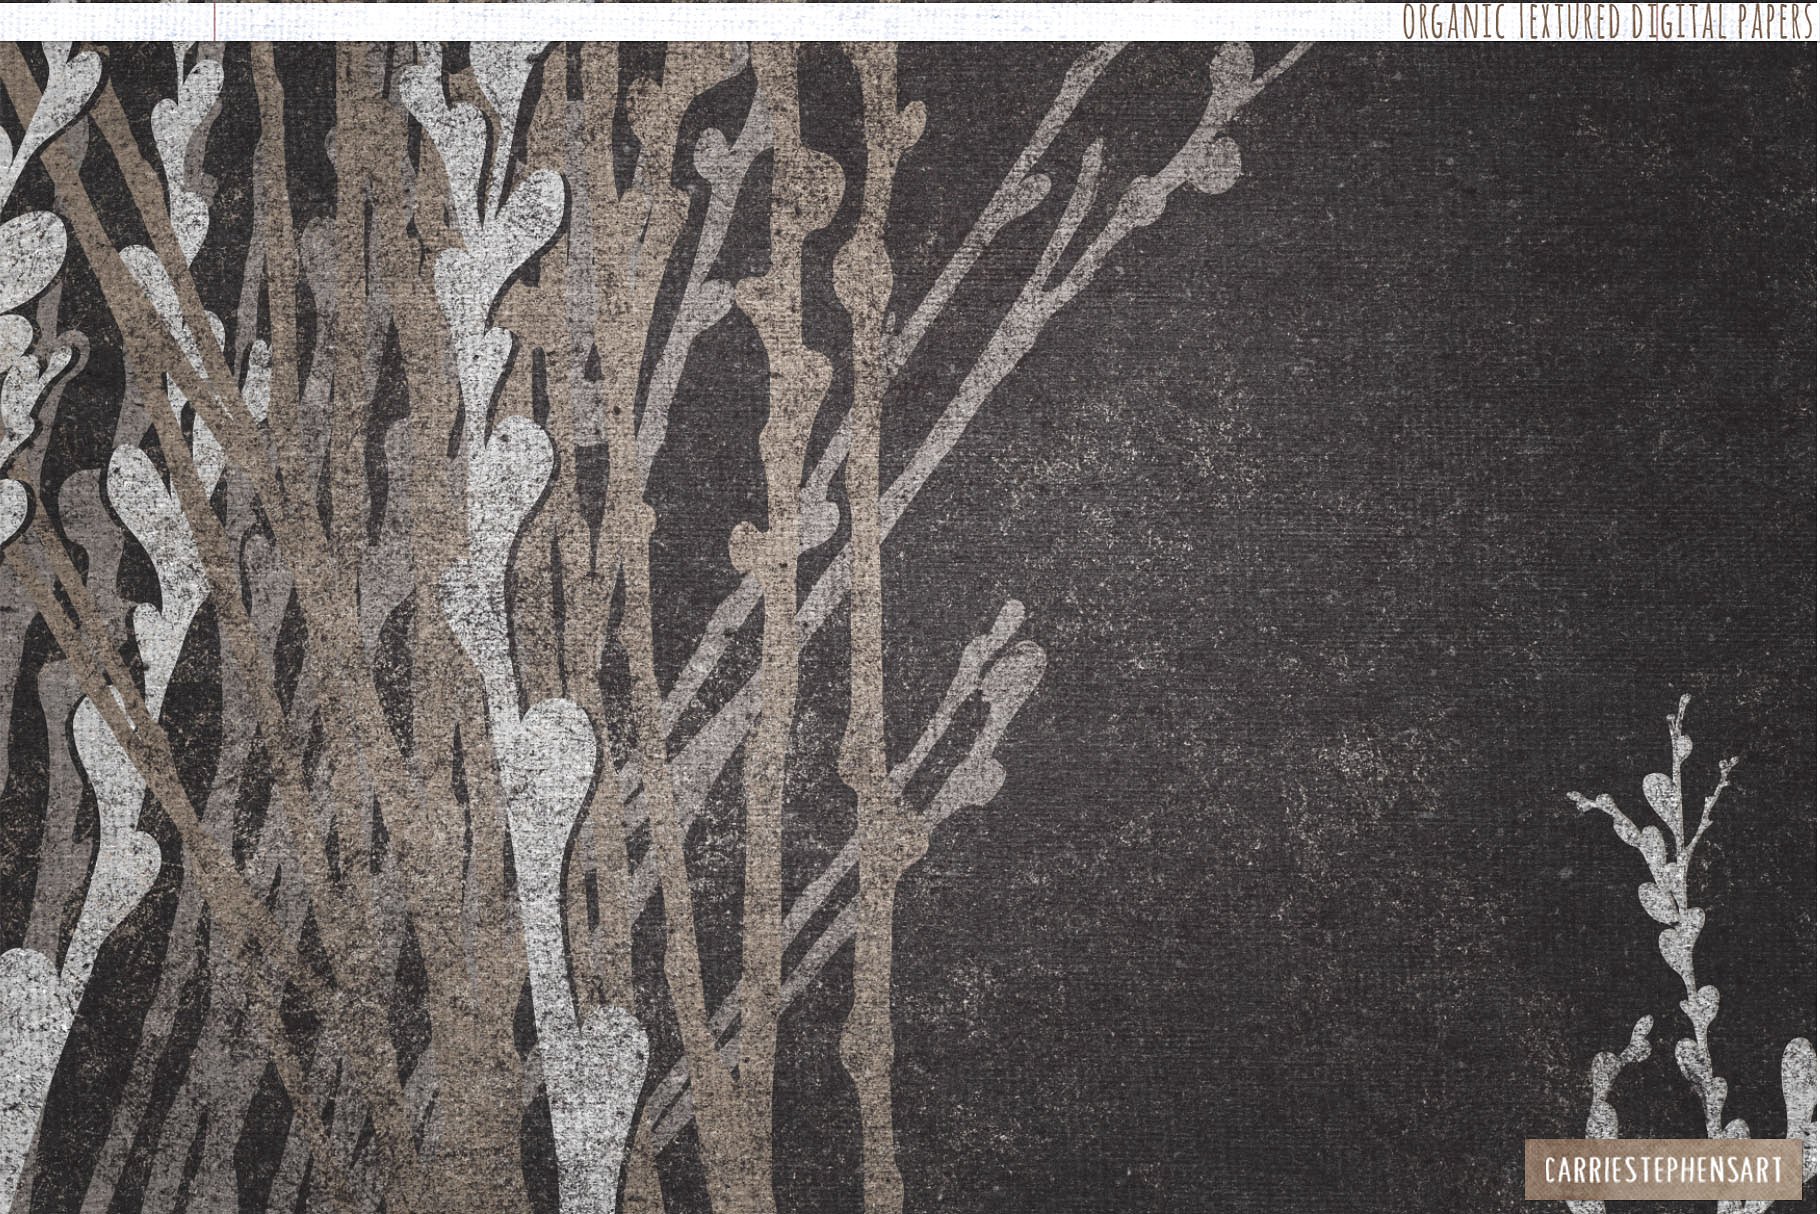 纯天然有机纹理背景 Natural Organic Textured Backgrounds插图4